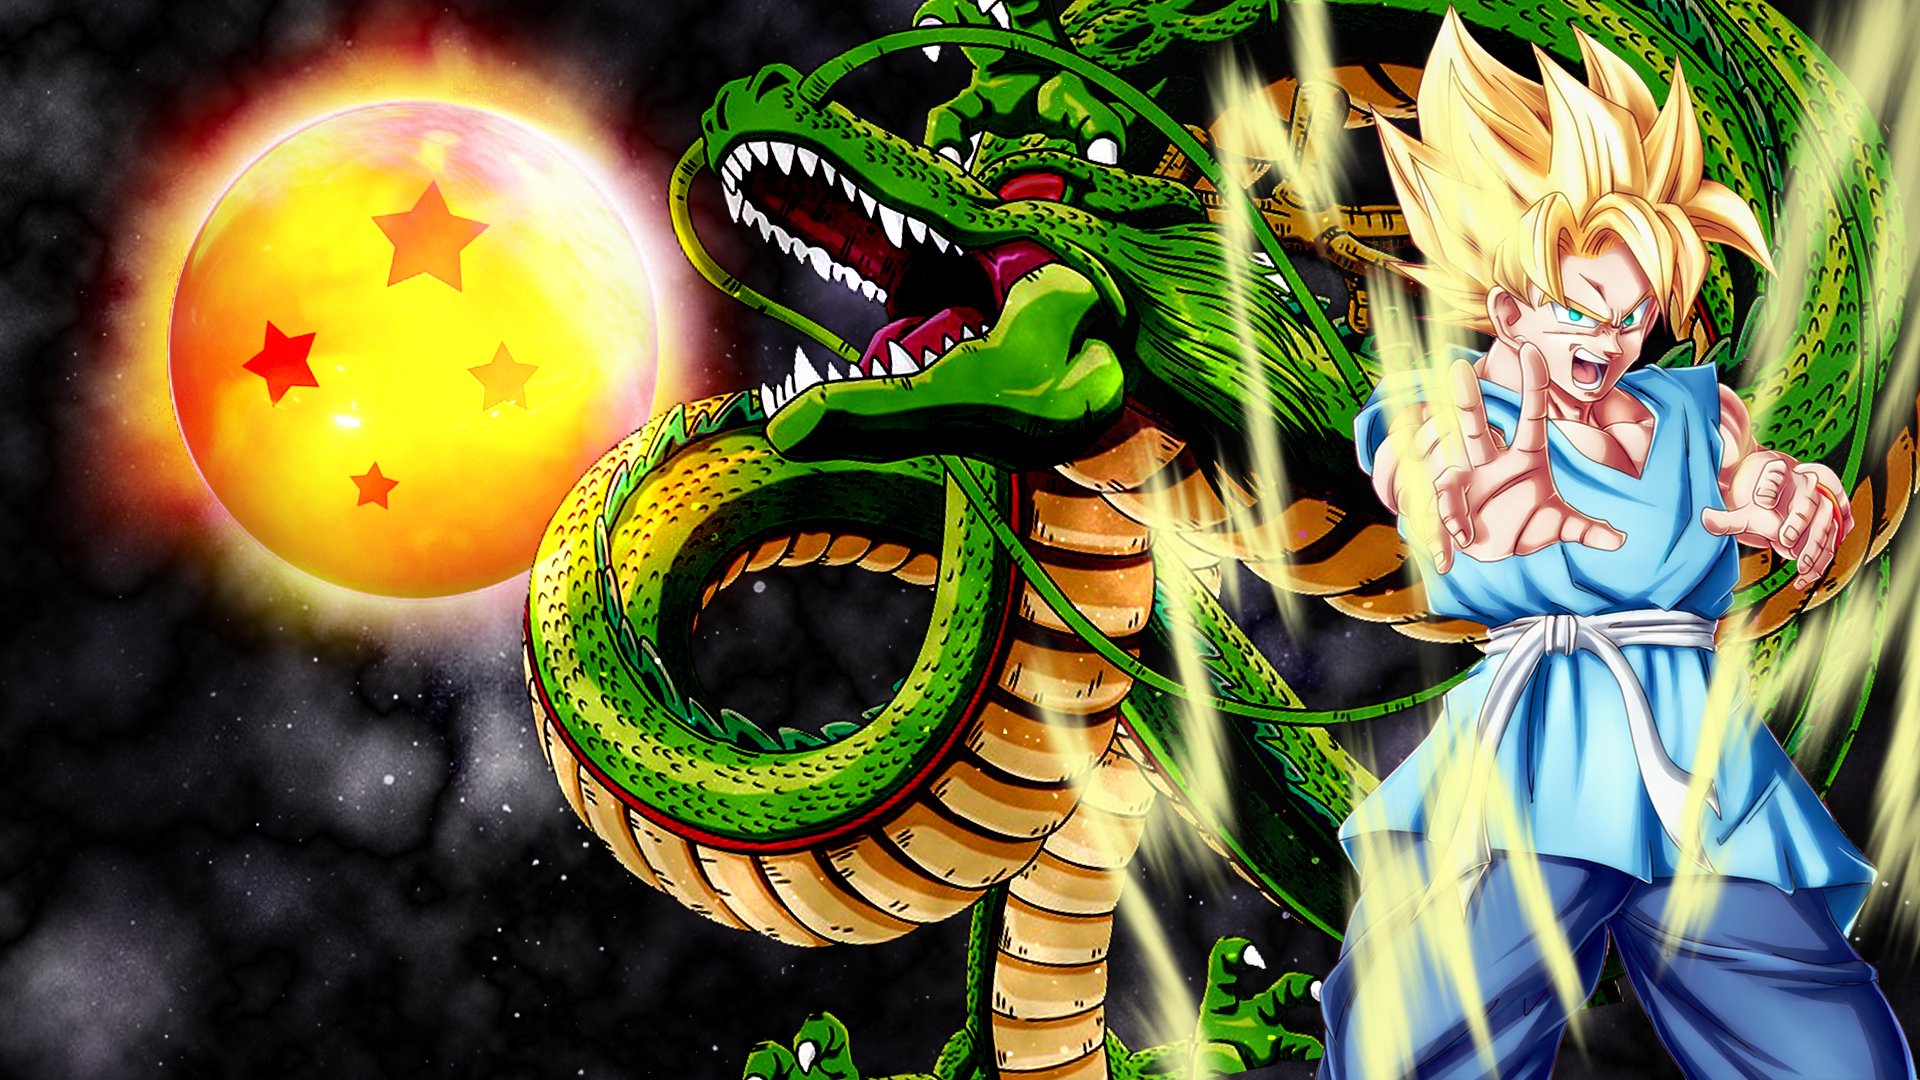 Goku and Shenron